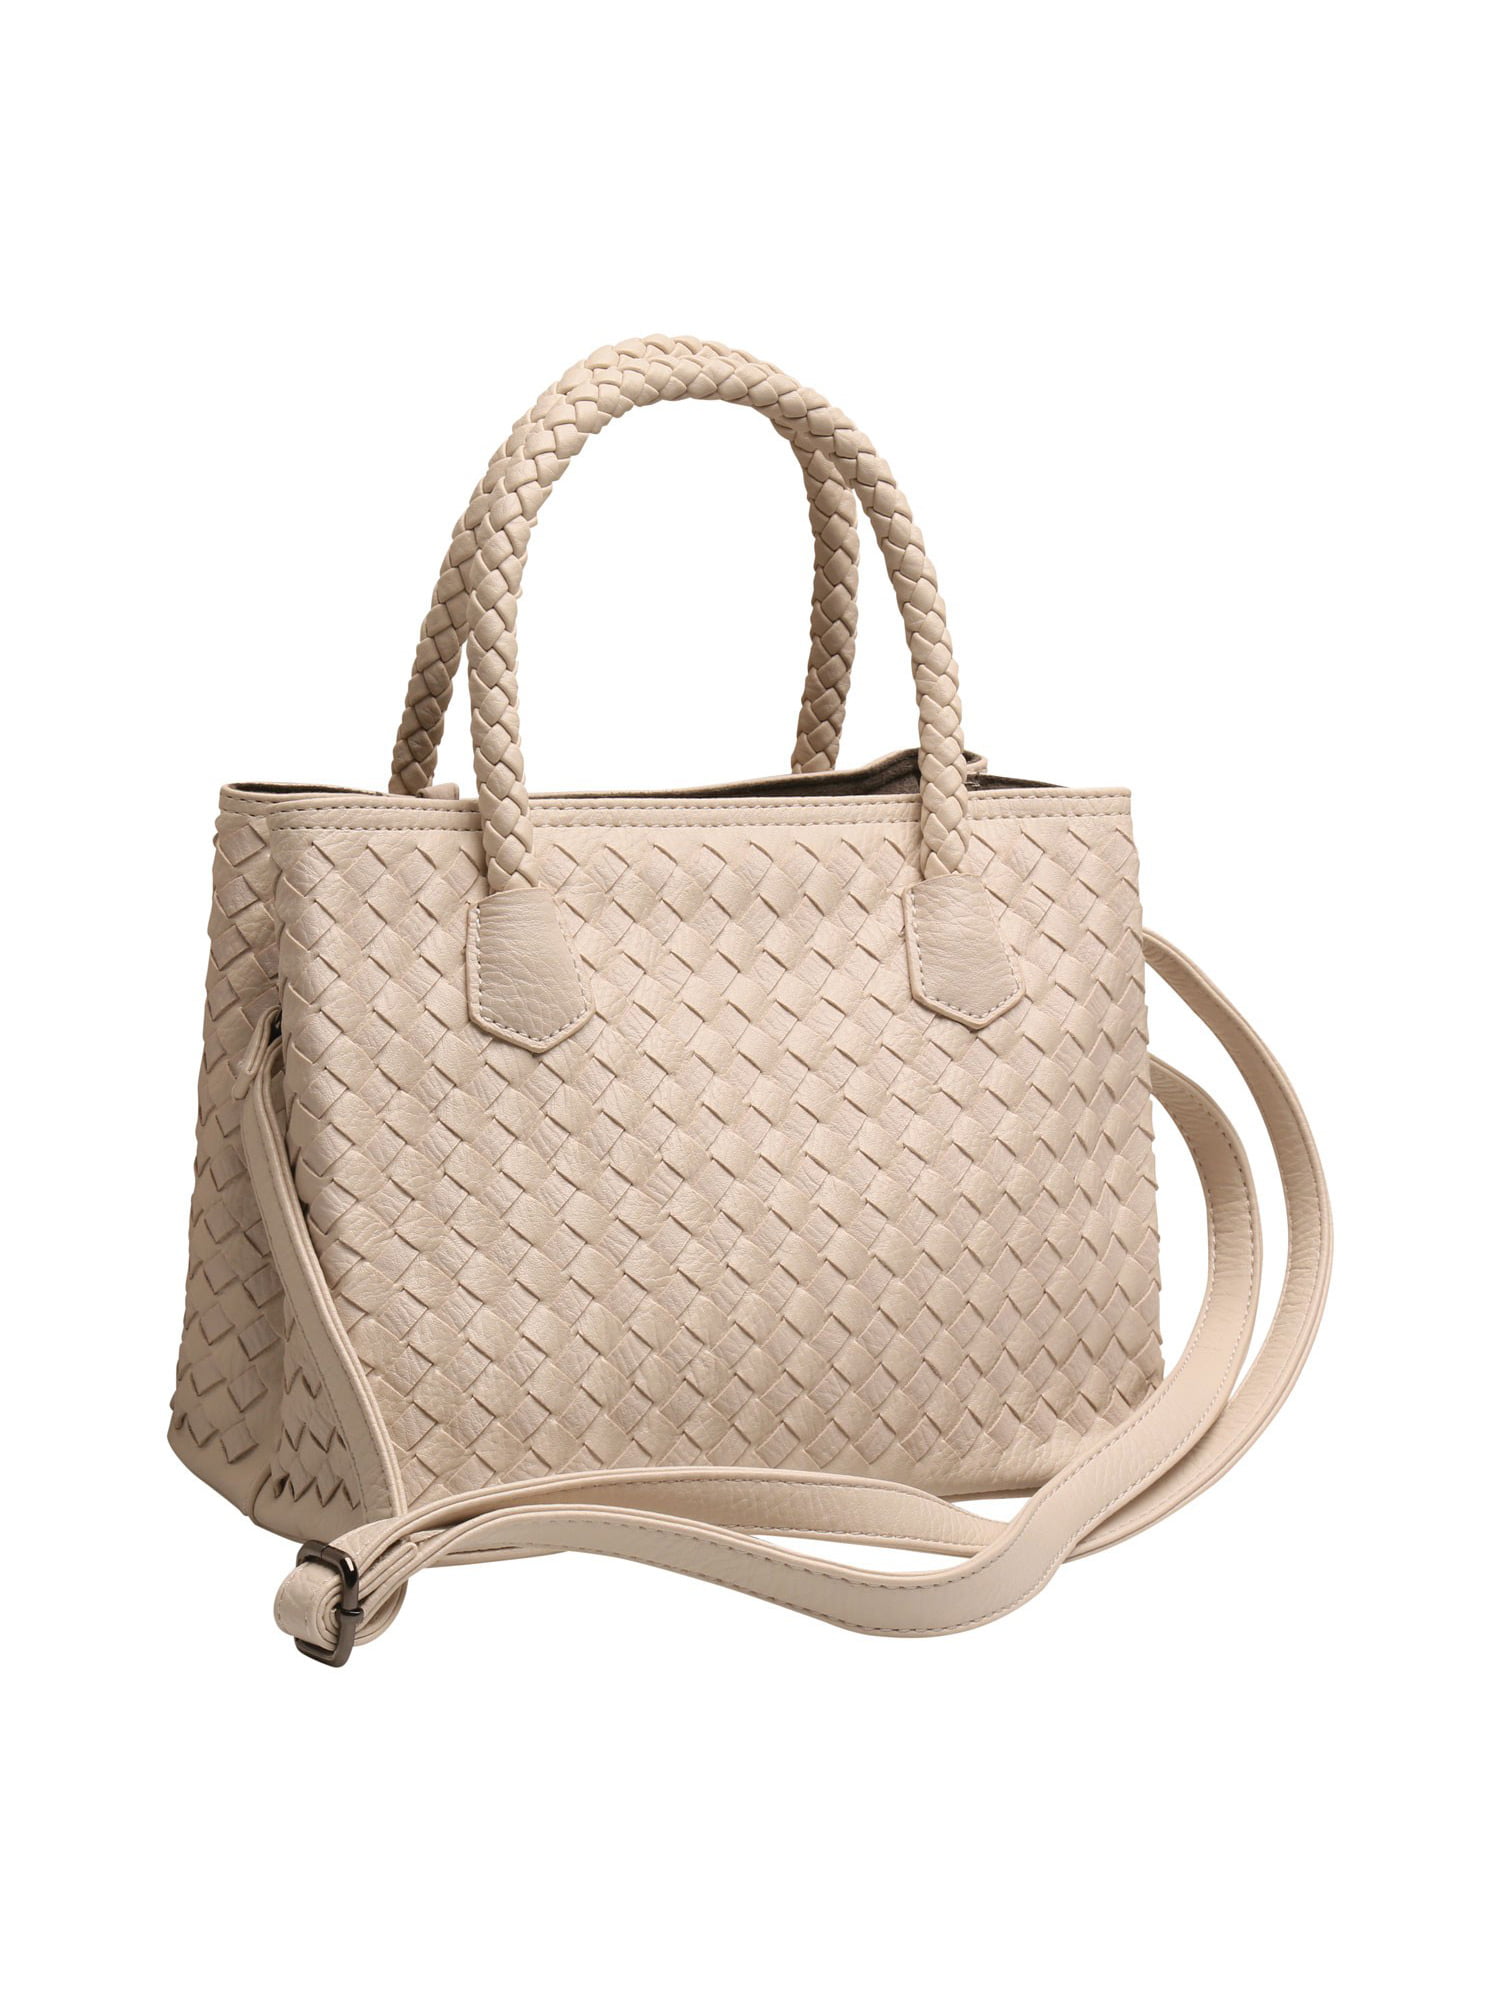 Oversized vintage Cabrelli Canada grey basket weave vinyl handbag large clutch purse gold details